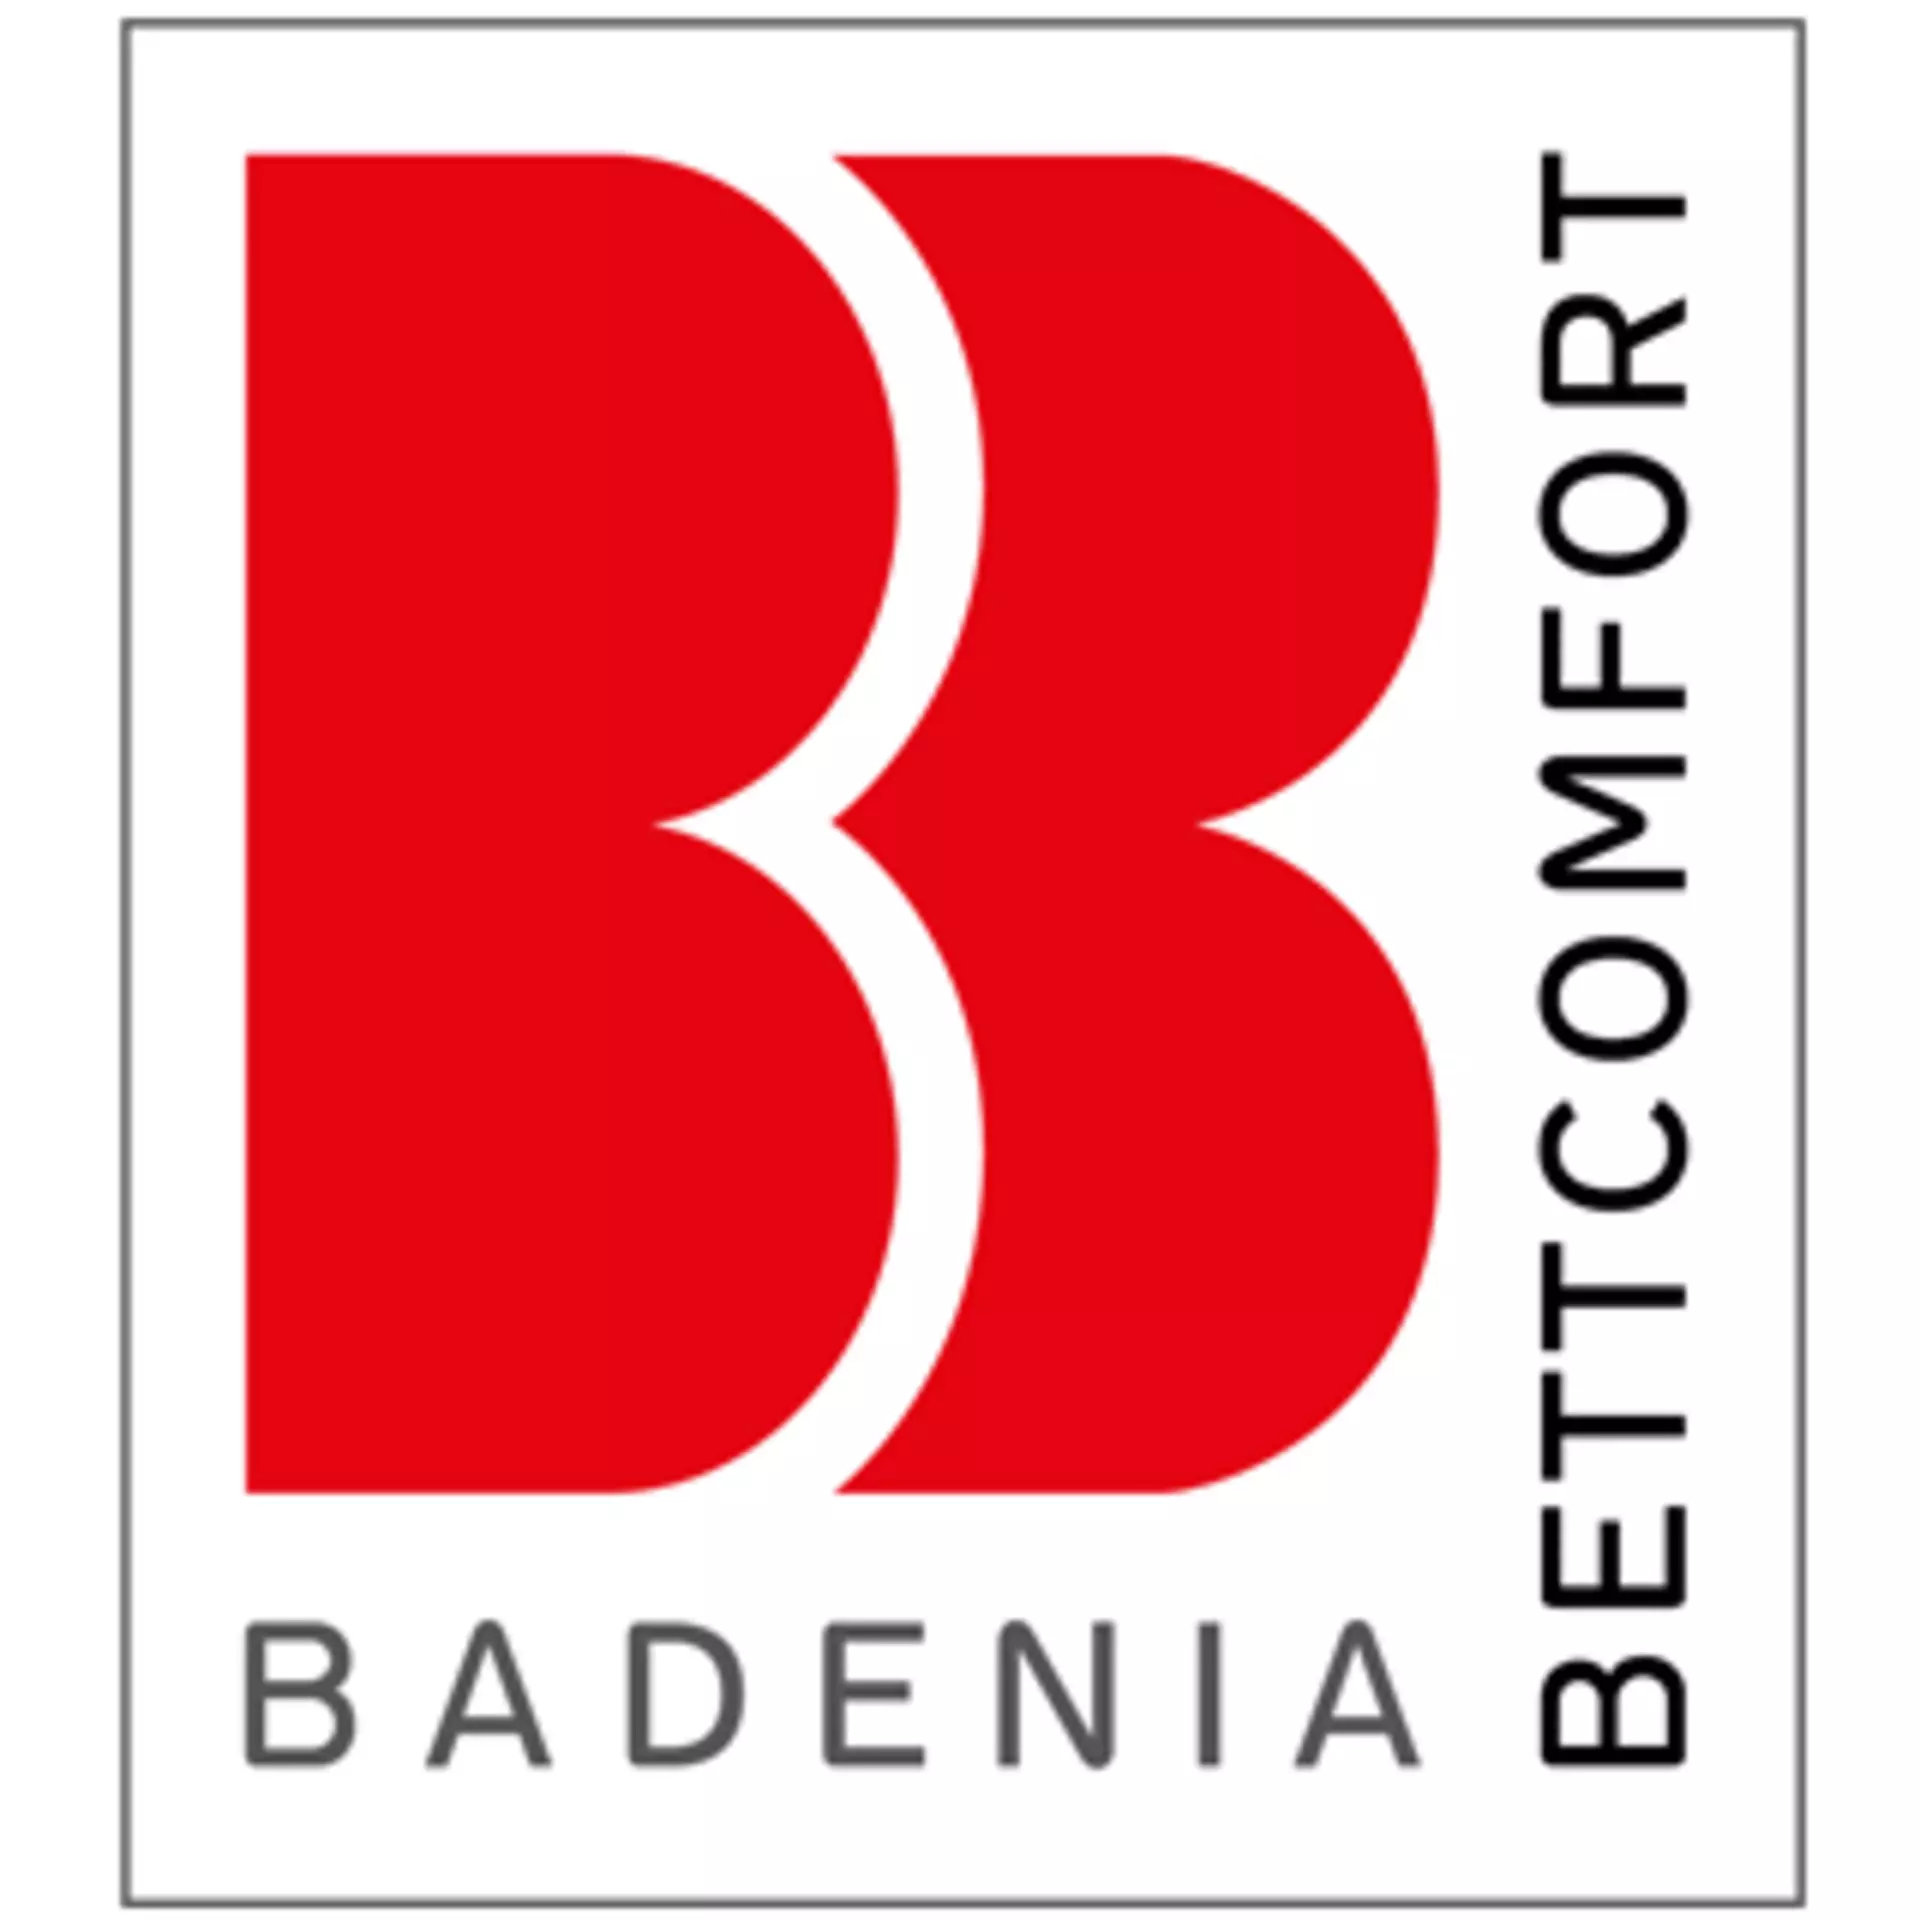 Badenia Bettcomfort